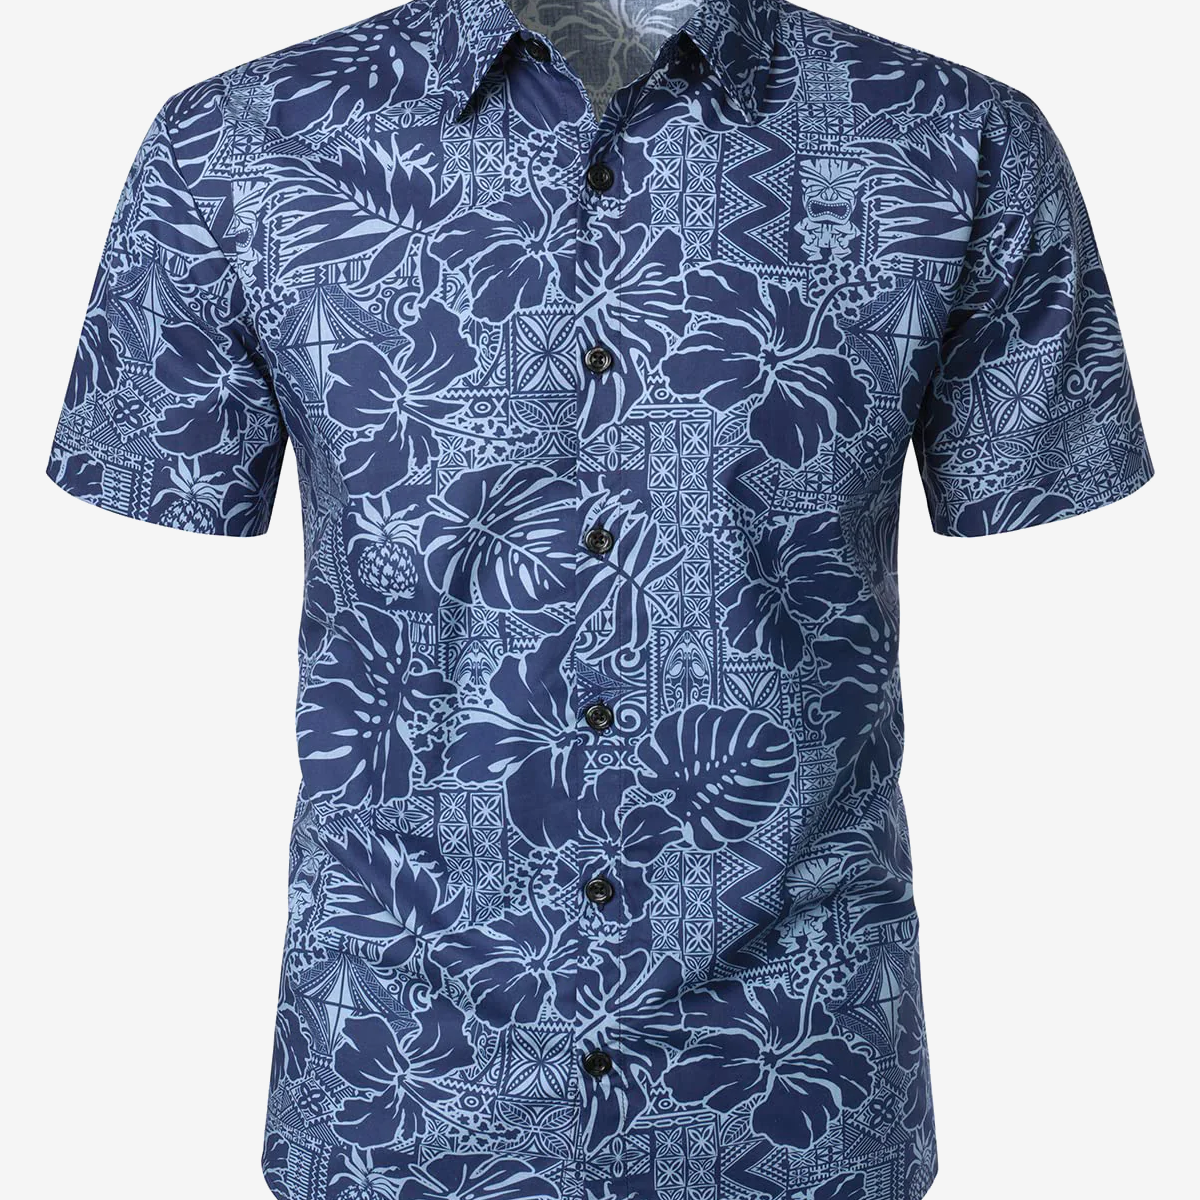 Chemise d'été boutonnée à manches courtes pour homme, bleu marine, imprimé hibiscus à fleurs hawaïennes